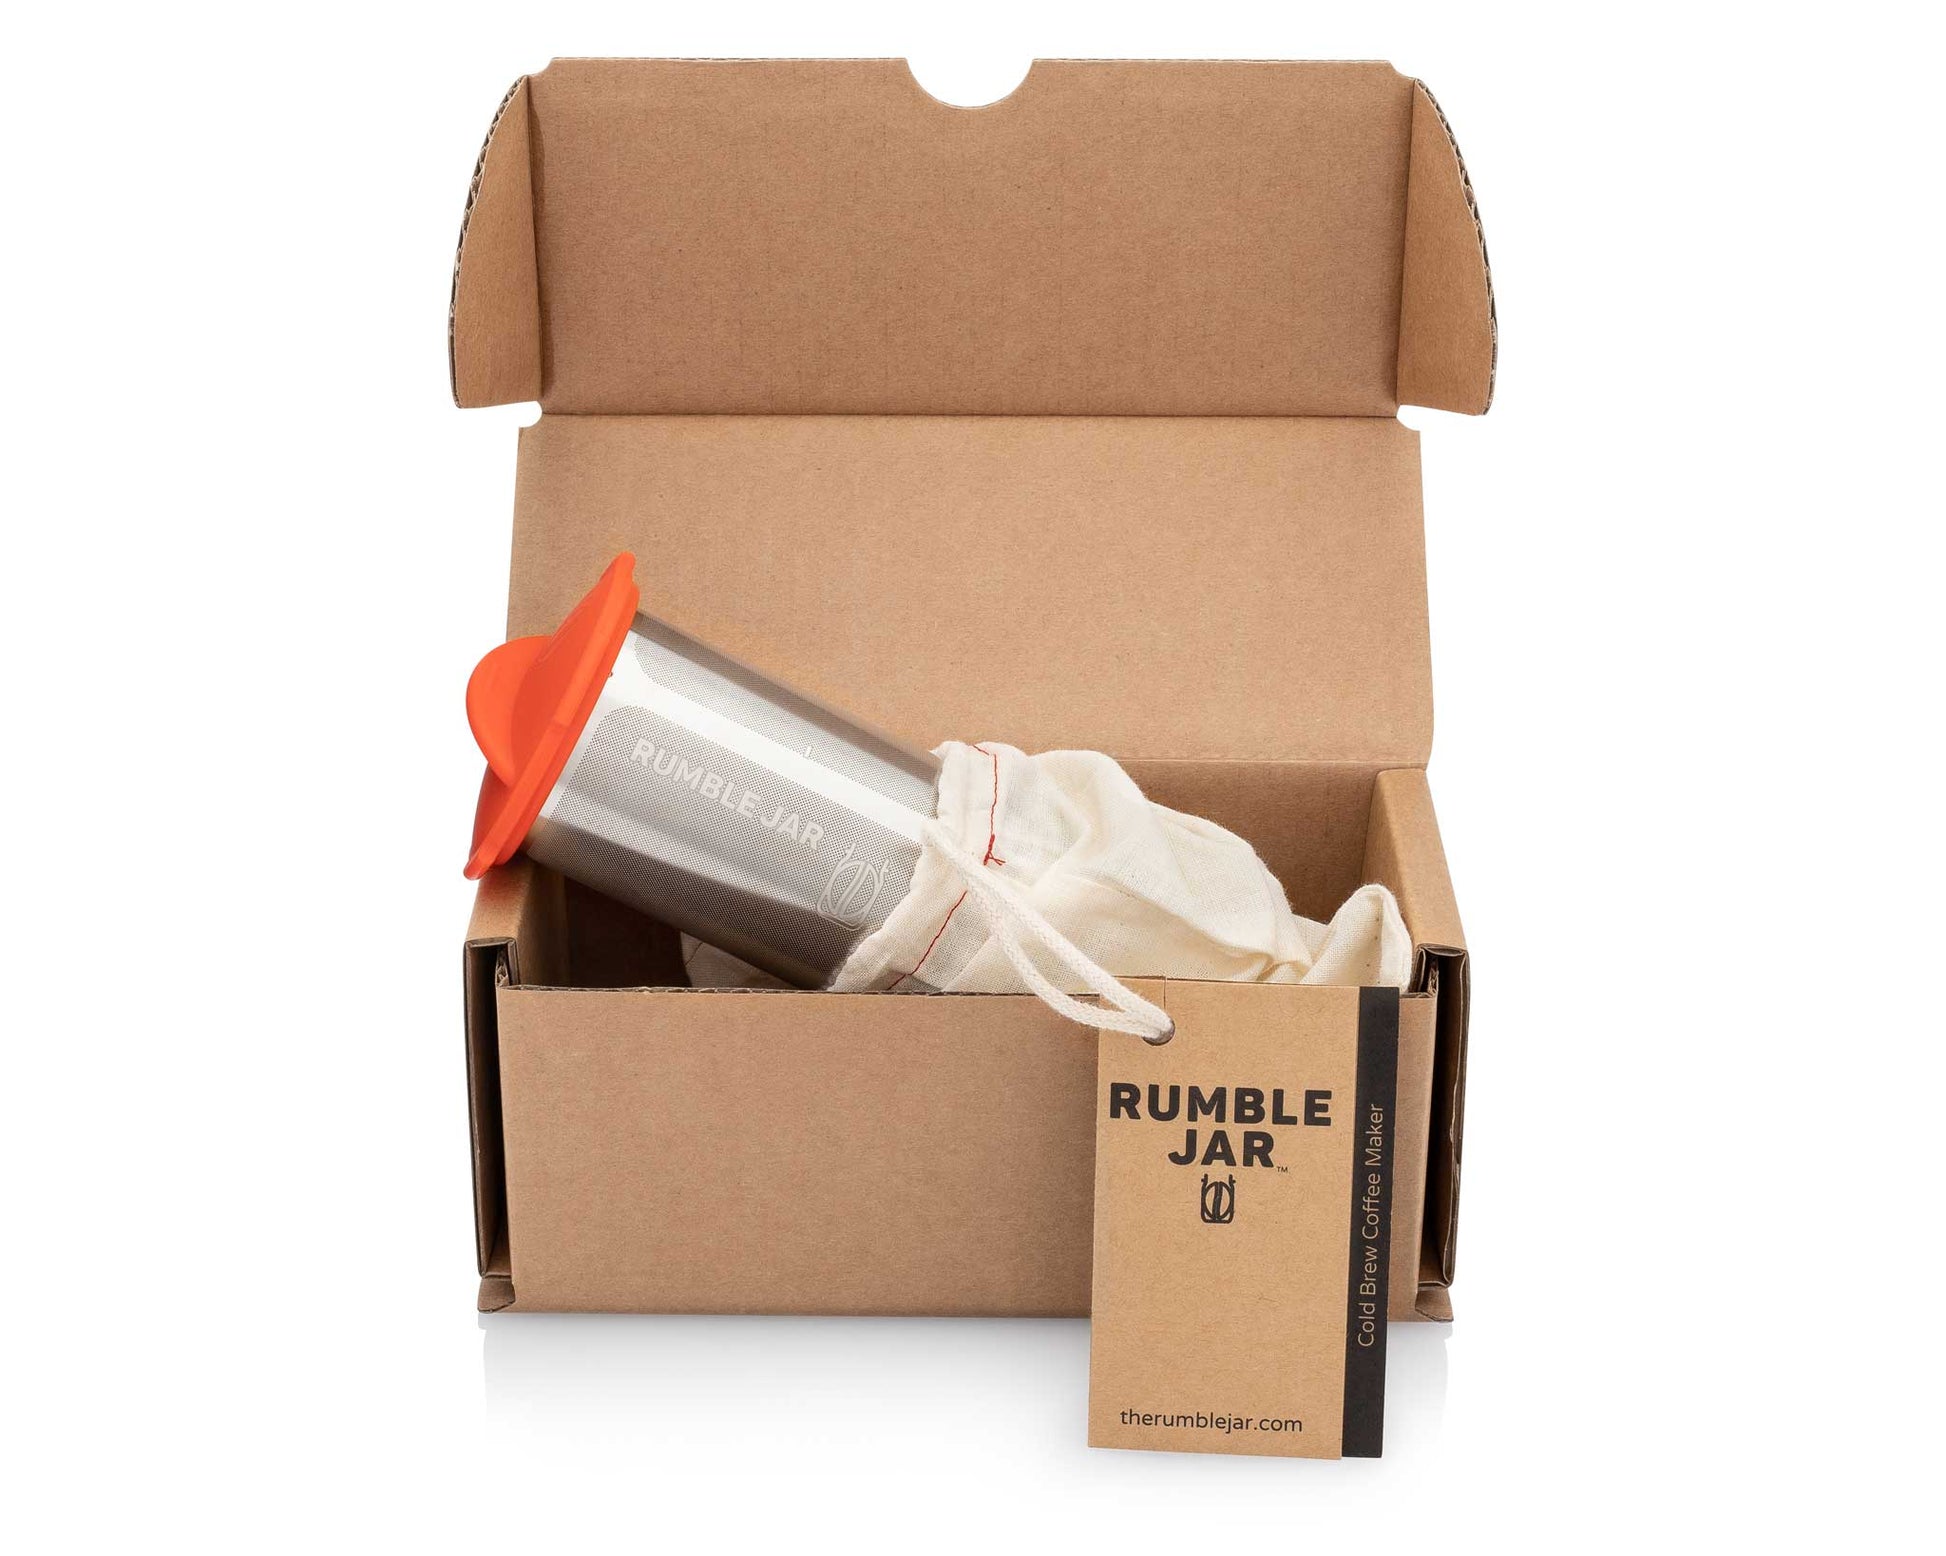 32oz Rumble Jar filter in box